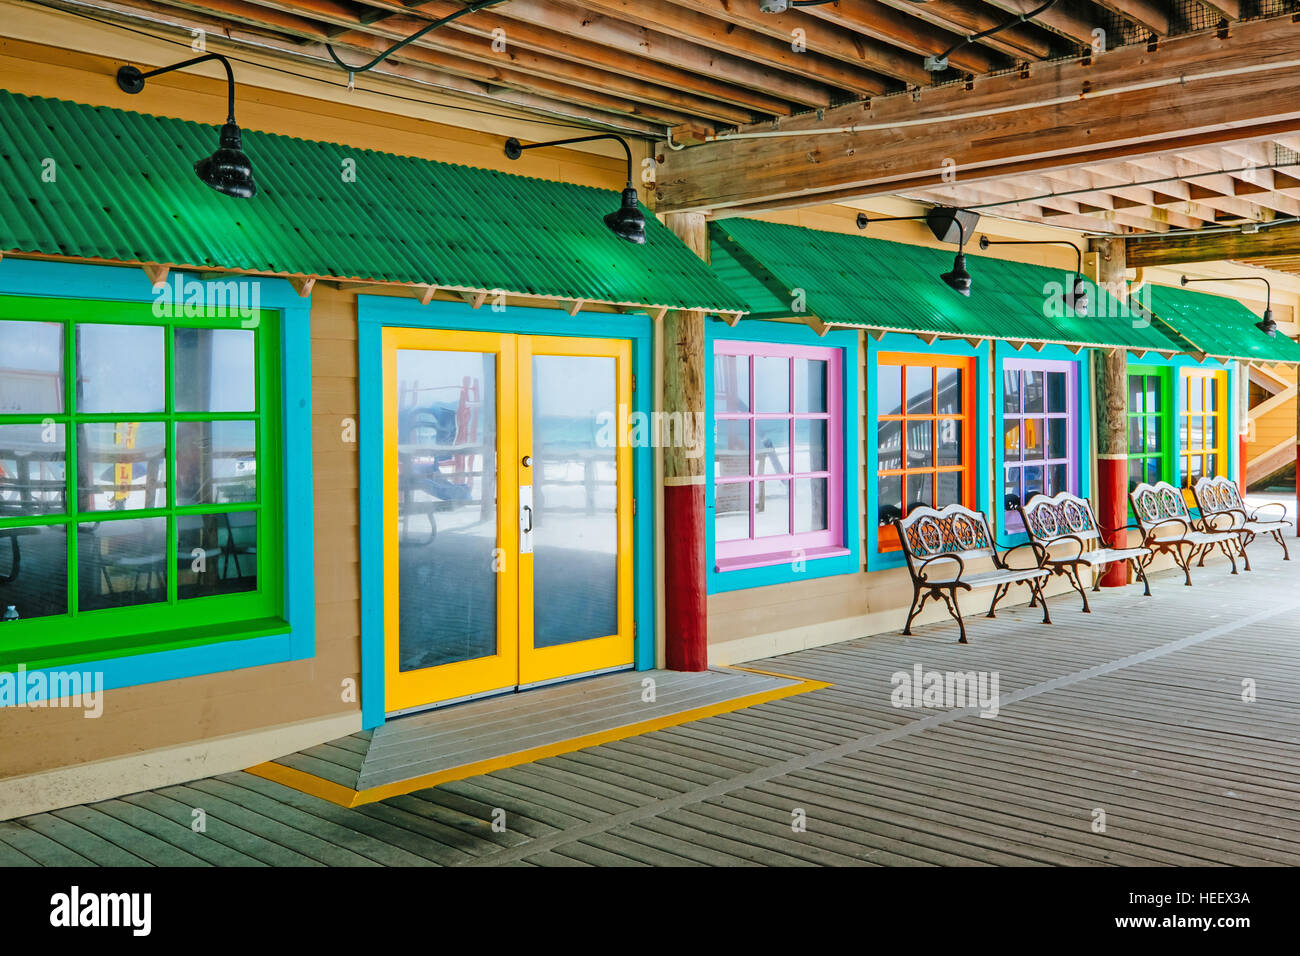 Un magasin vide avant sur l'île okaloosa dans la Floride, une communauté de villégiature sur le golfe du Mexique. Banque D'Images